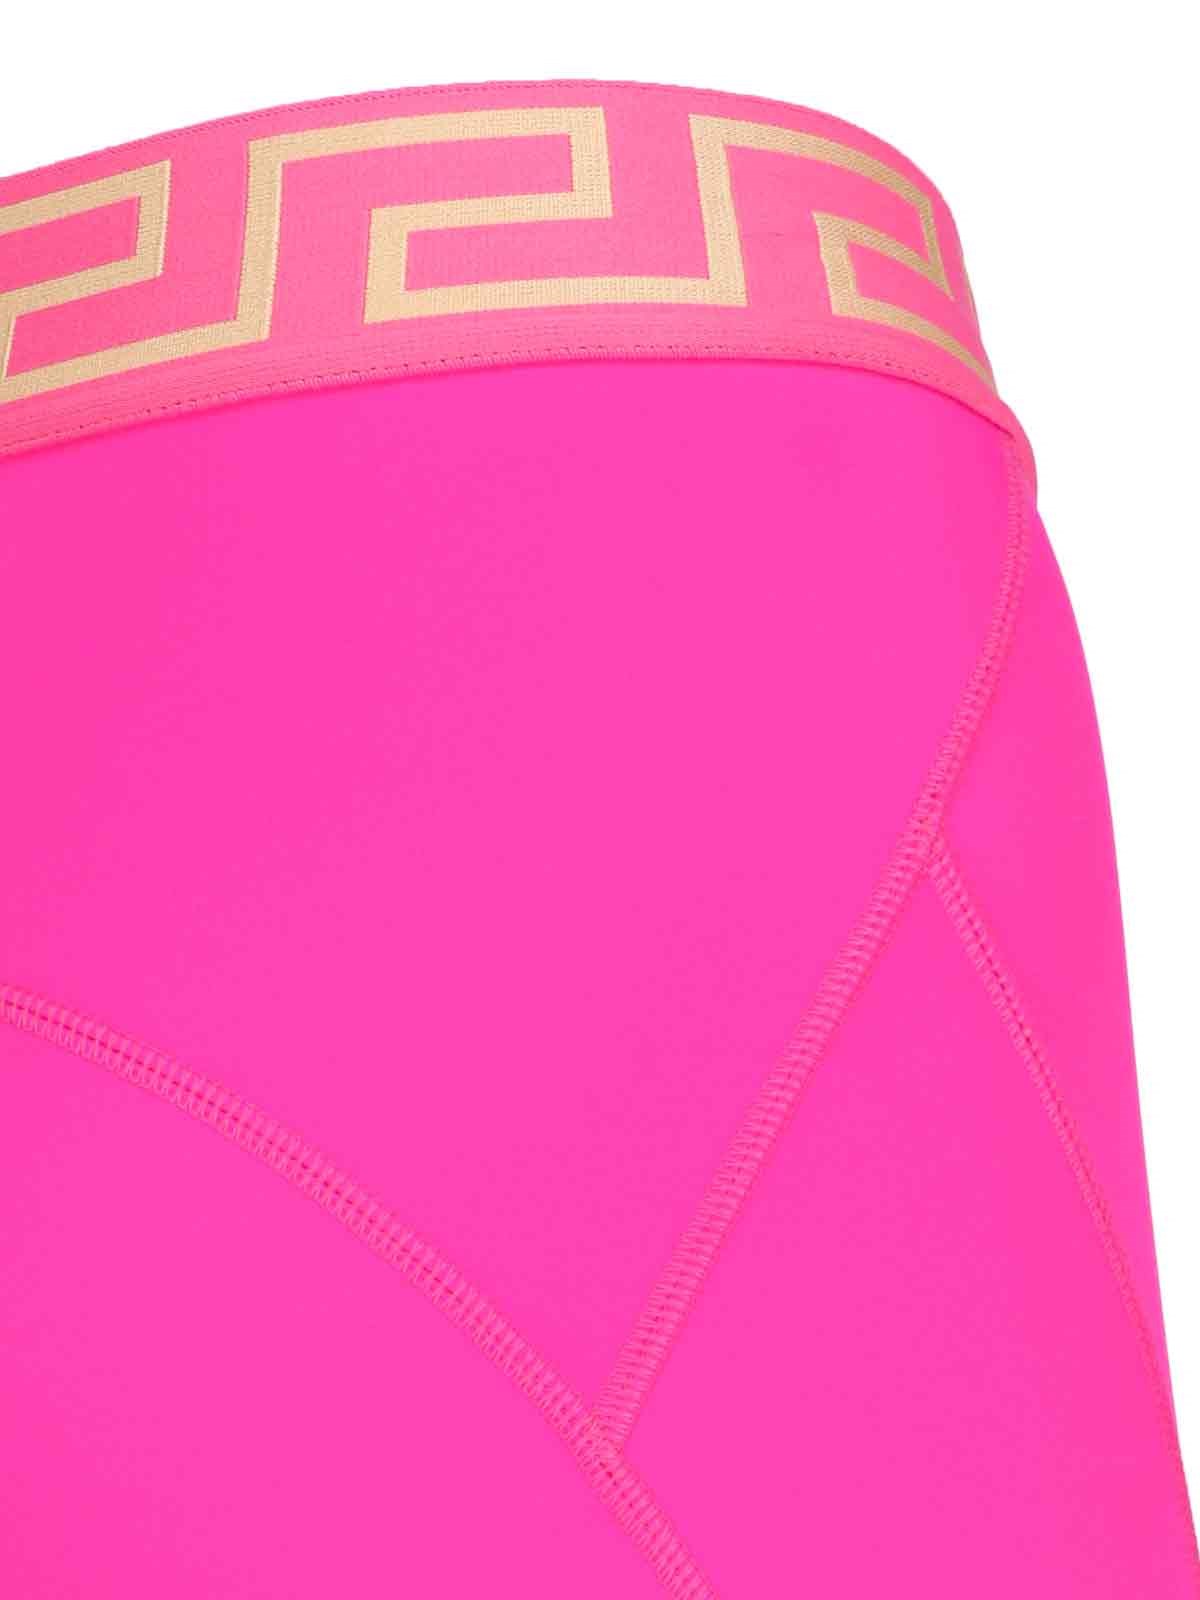 Pink Greca Leggings by Versace Underwear on Sale